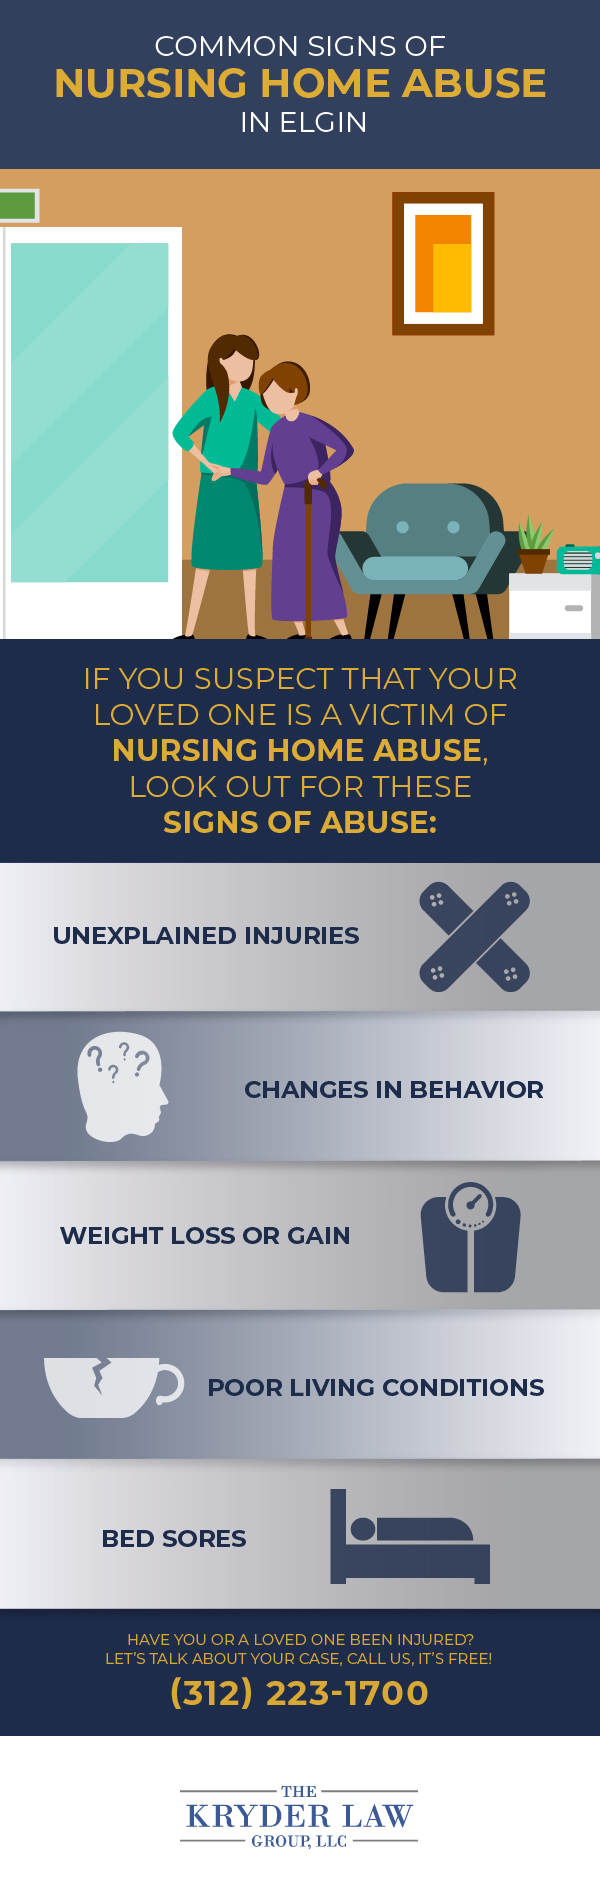 Signos comunes de abuso en hogares de ancianos en Elgin